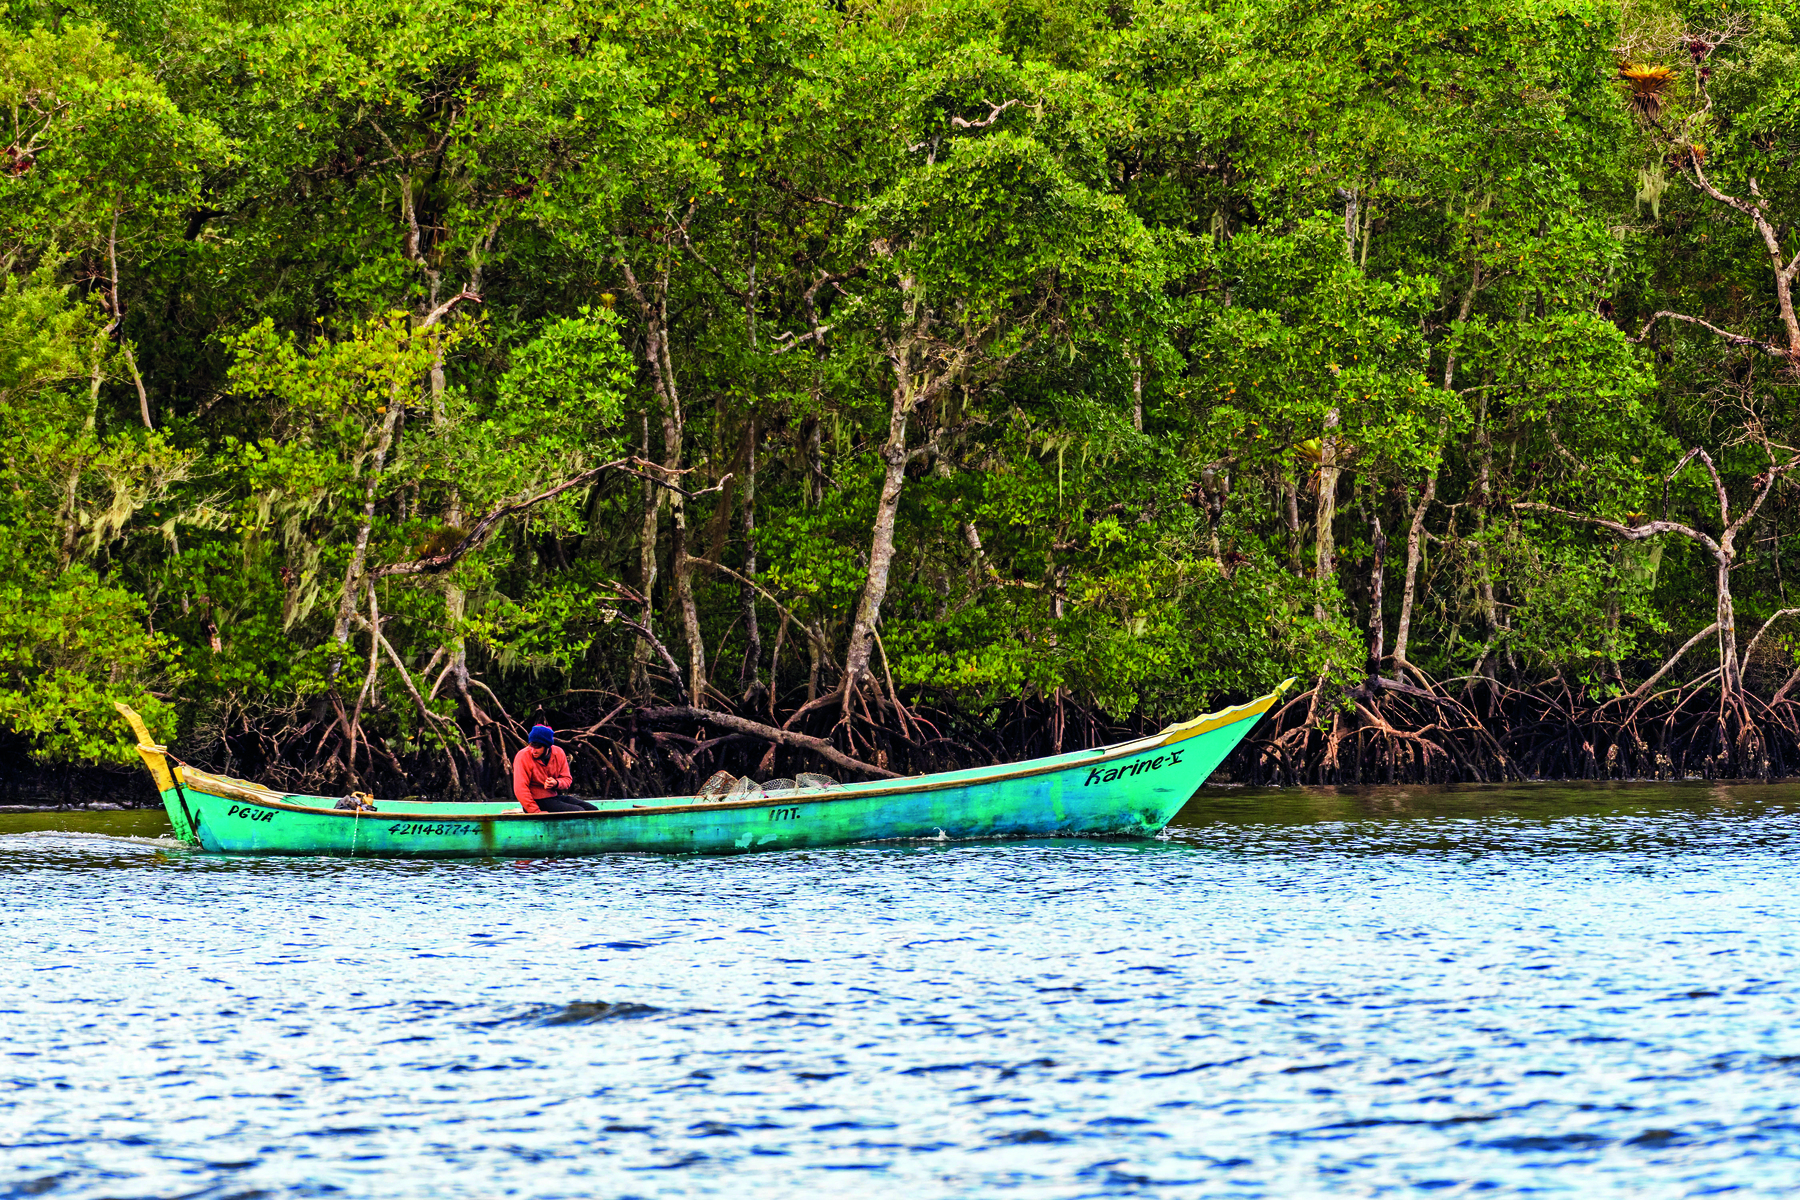 Fotografia. Sobre um rio cercado por uma densa vegetação há uma canoa de casco azul, contendo um homem sentado em seu interior.